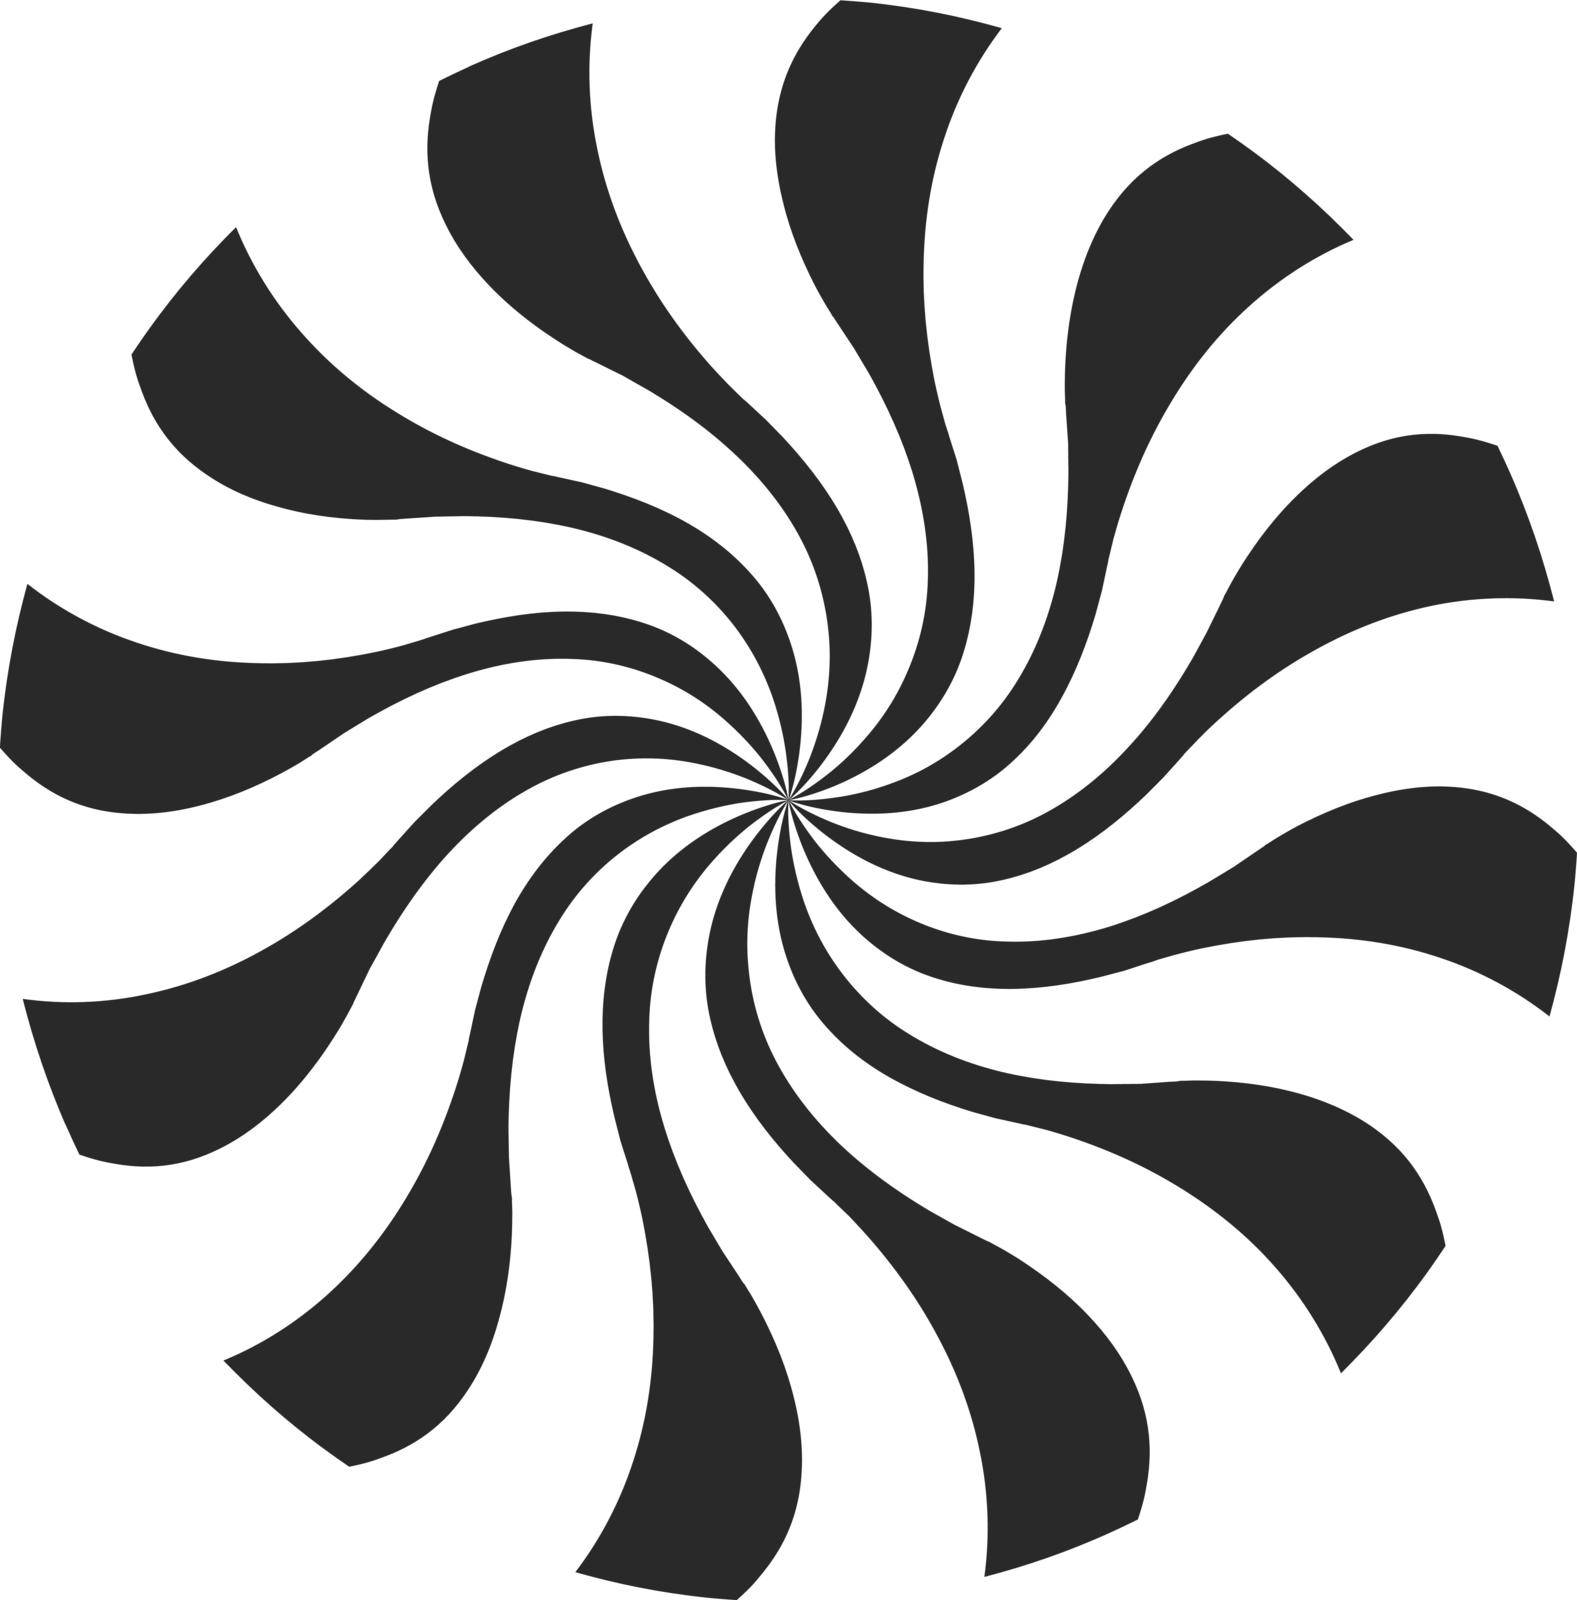 Black round swirl. Twisting motion circle logo isolated on white background